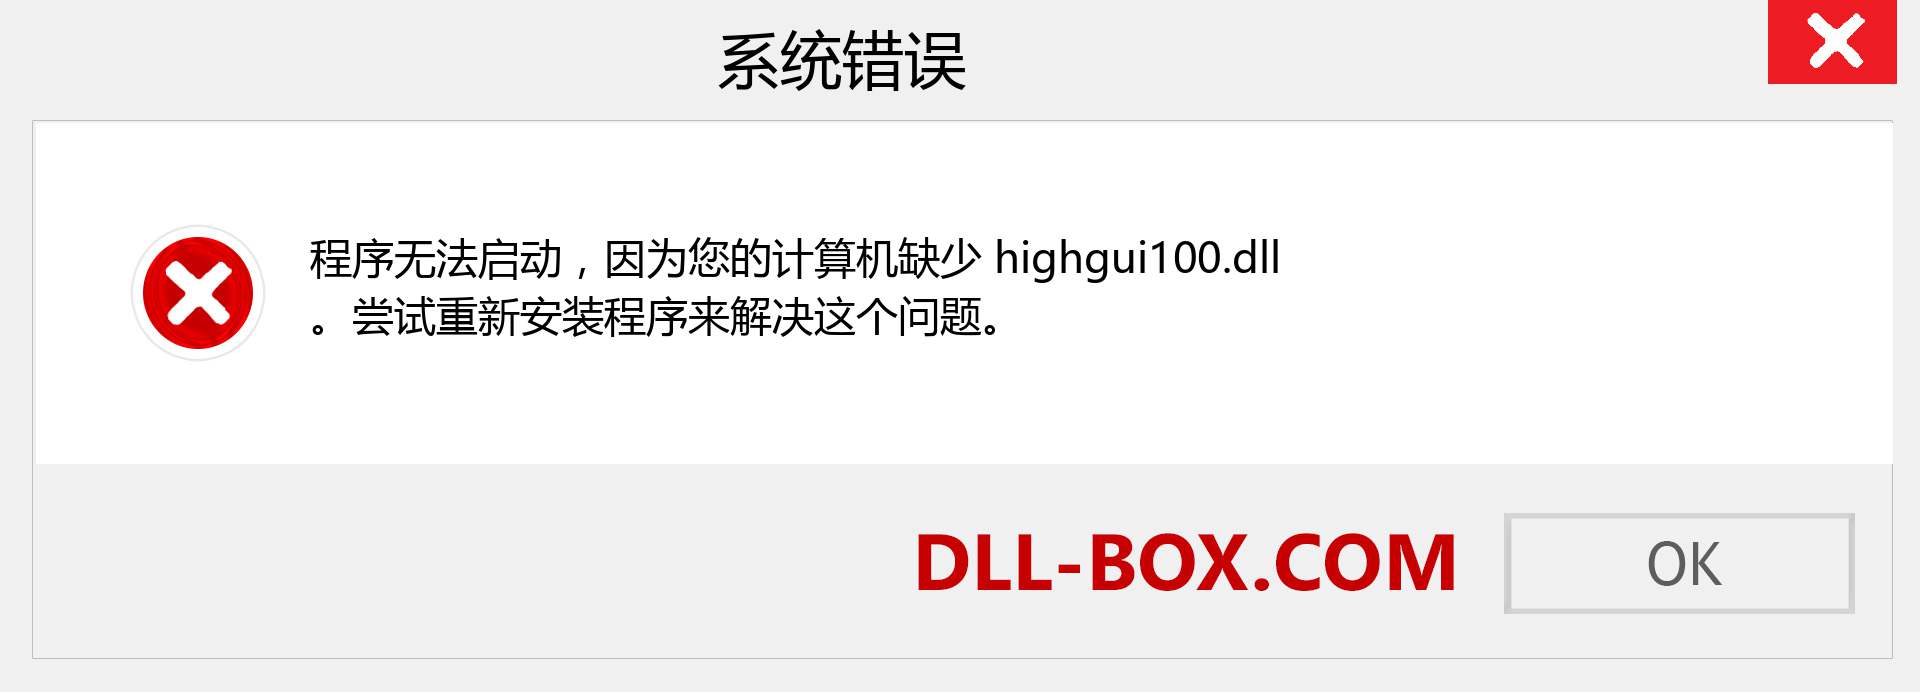 highgui100.dll 文件丢失？。 适用于 Windows 7、8、10 的下载 - 修复 Windows、照片、图像上的 highgui100 dll 丢失错误